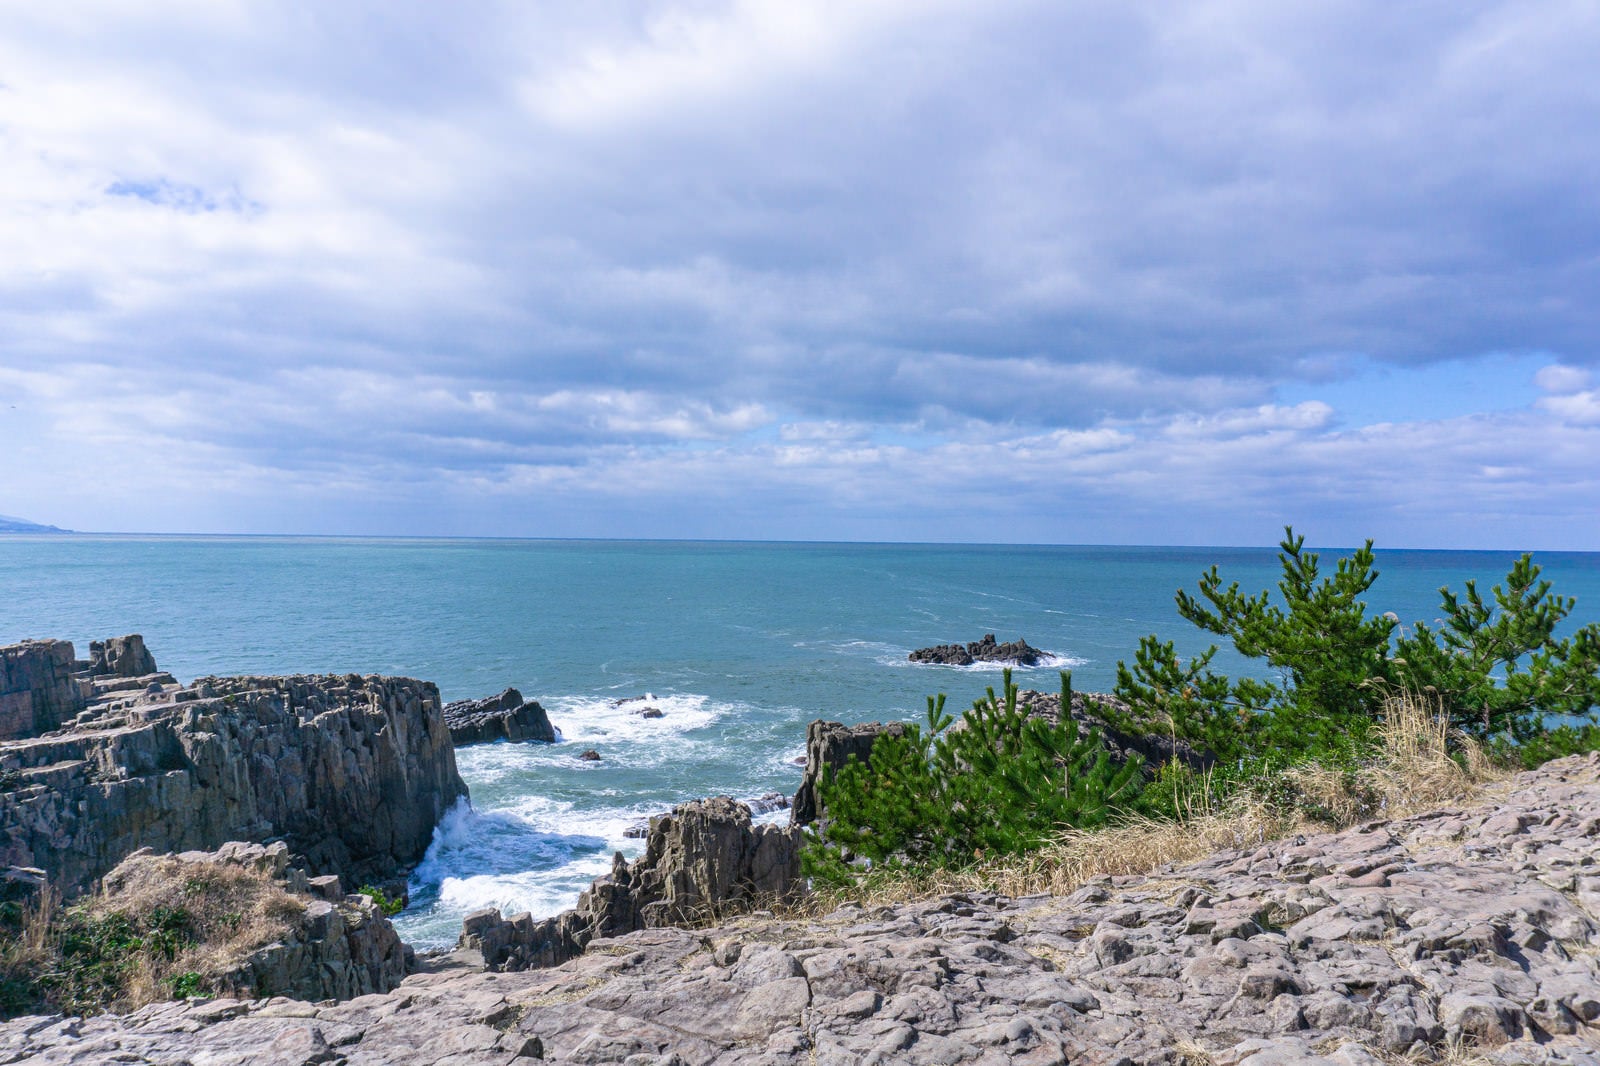 「東尋坊の遊歩道から見る日本海と北西からの波に向かって進む軍艦や潜水艦に見える軍艦岩」の写真